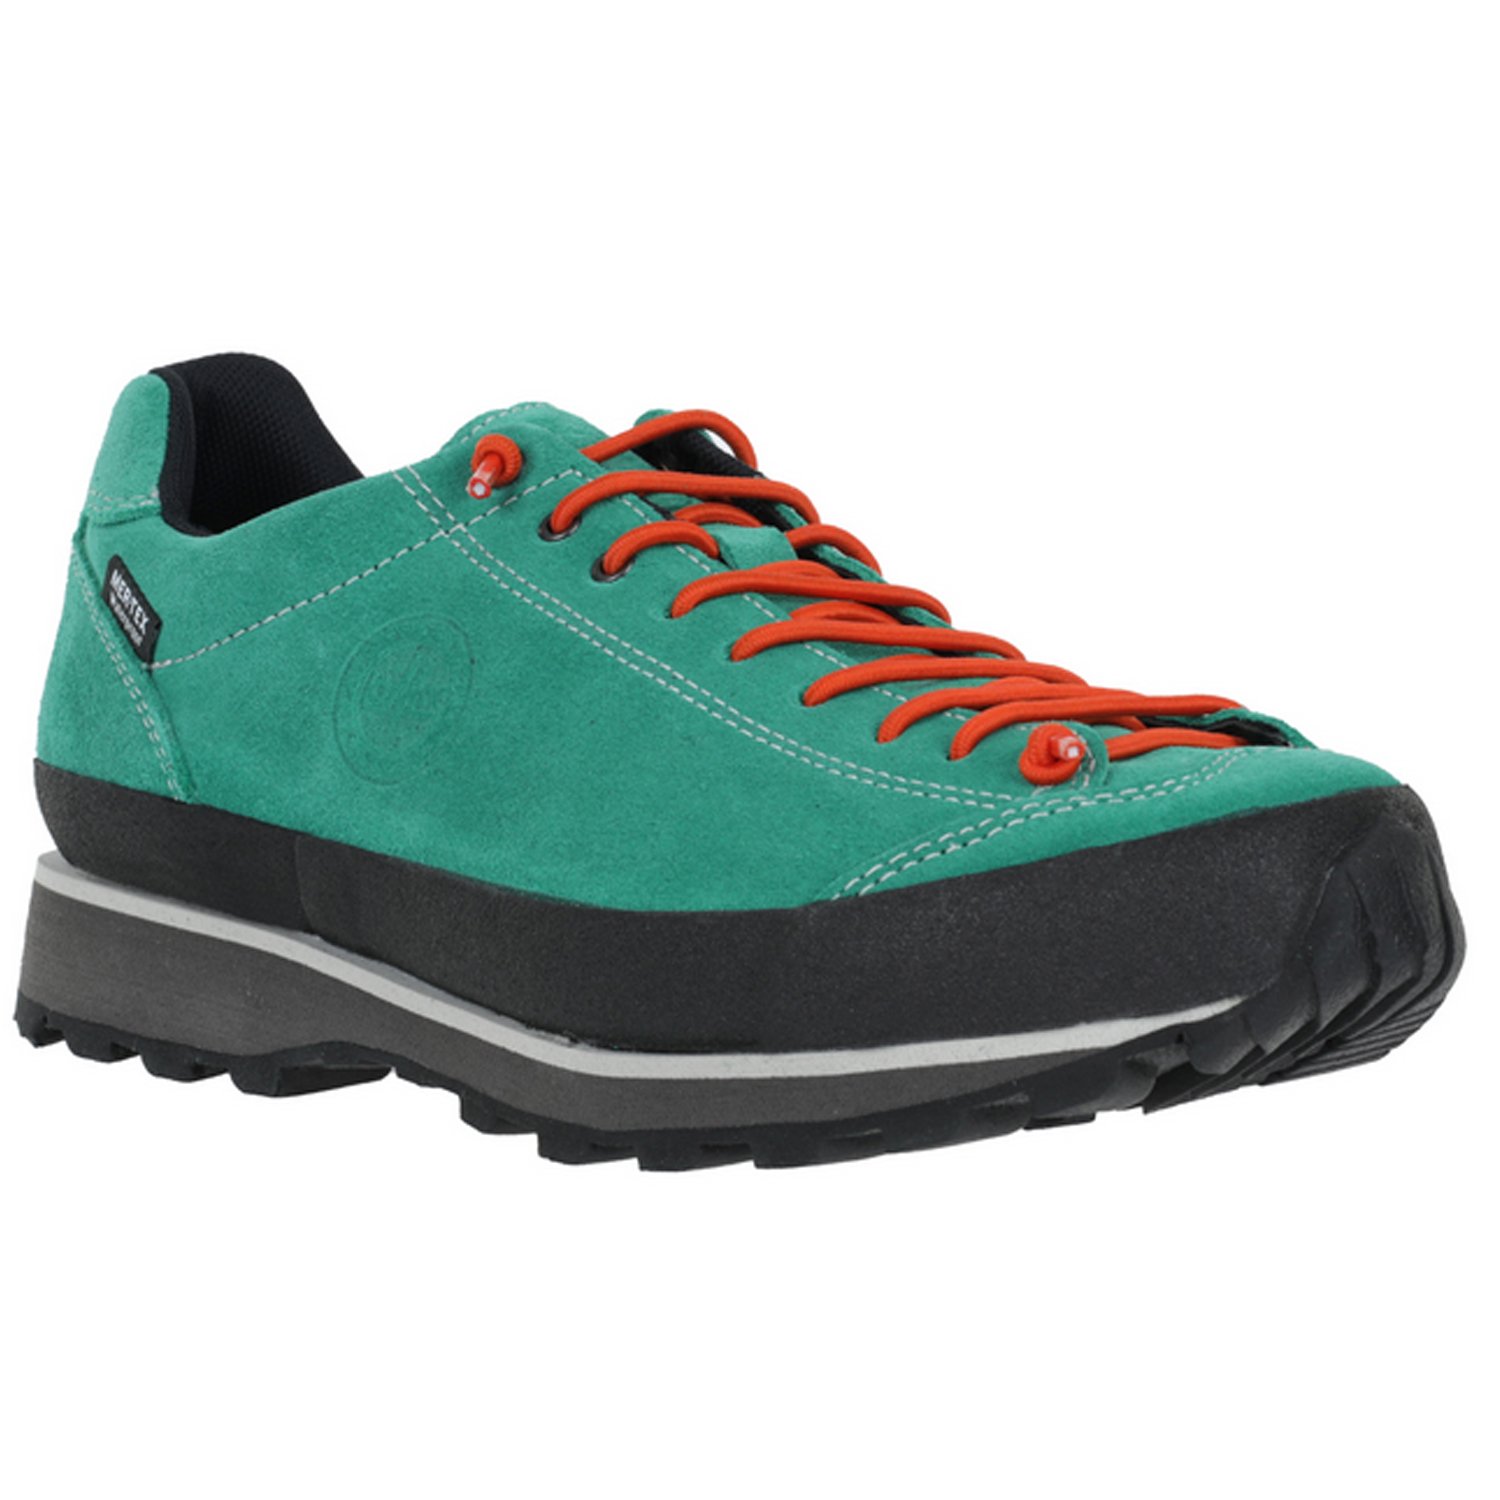 Ботинки Lomer Bio Naturale Suede MTX Elf, мужской, зеленый/оранжевый, 2023-24, 50082_A_27 ботинки lomer bio naturale canvas jasper 39 eu